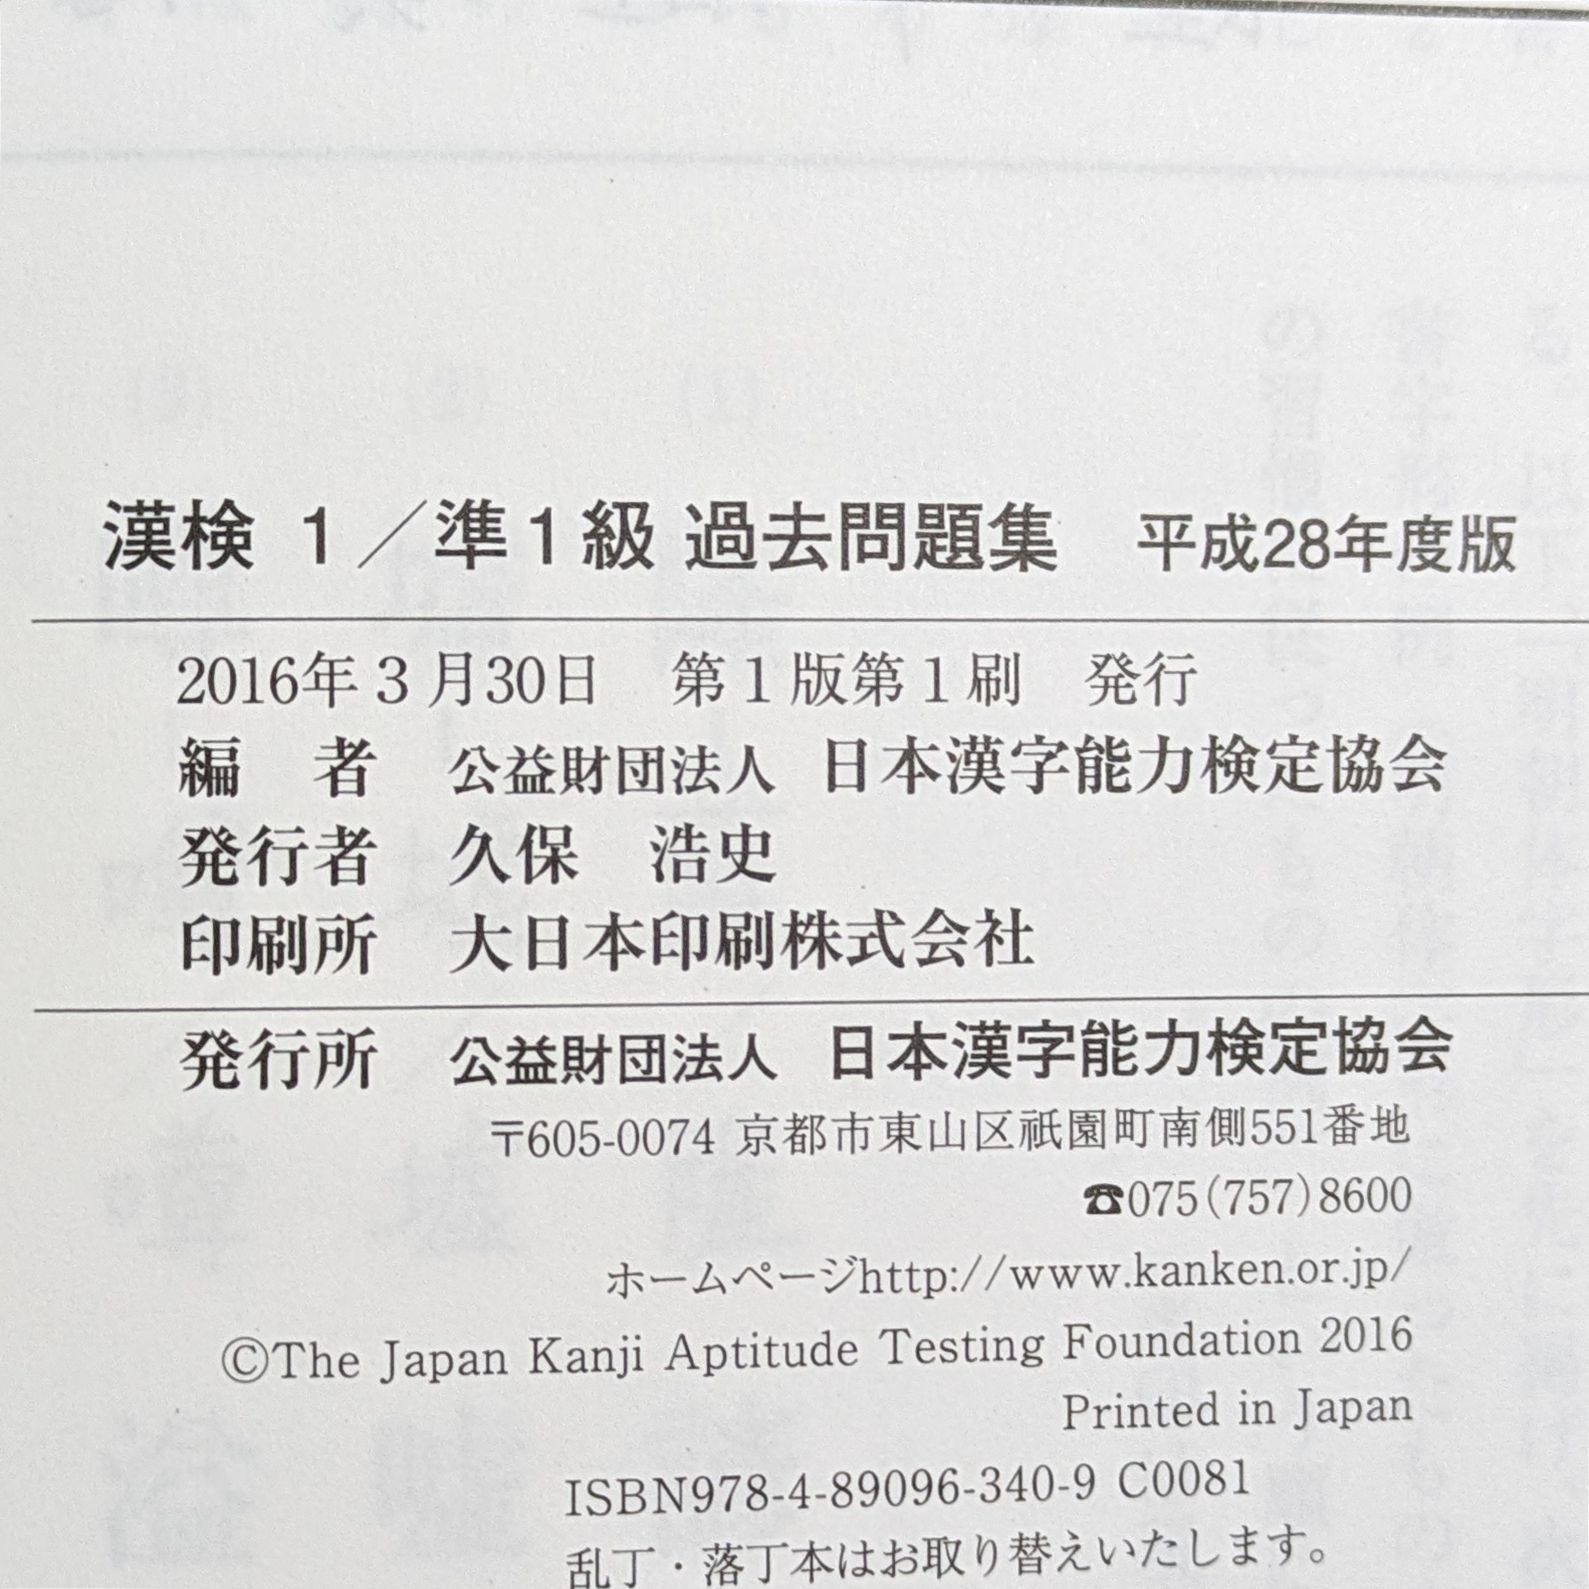 漢検 1/準1級 過去問題集 平成28年度版